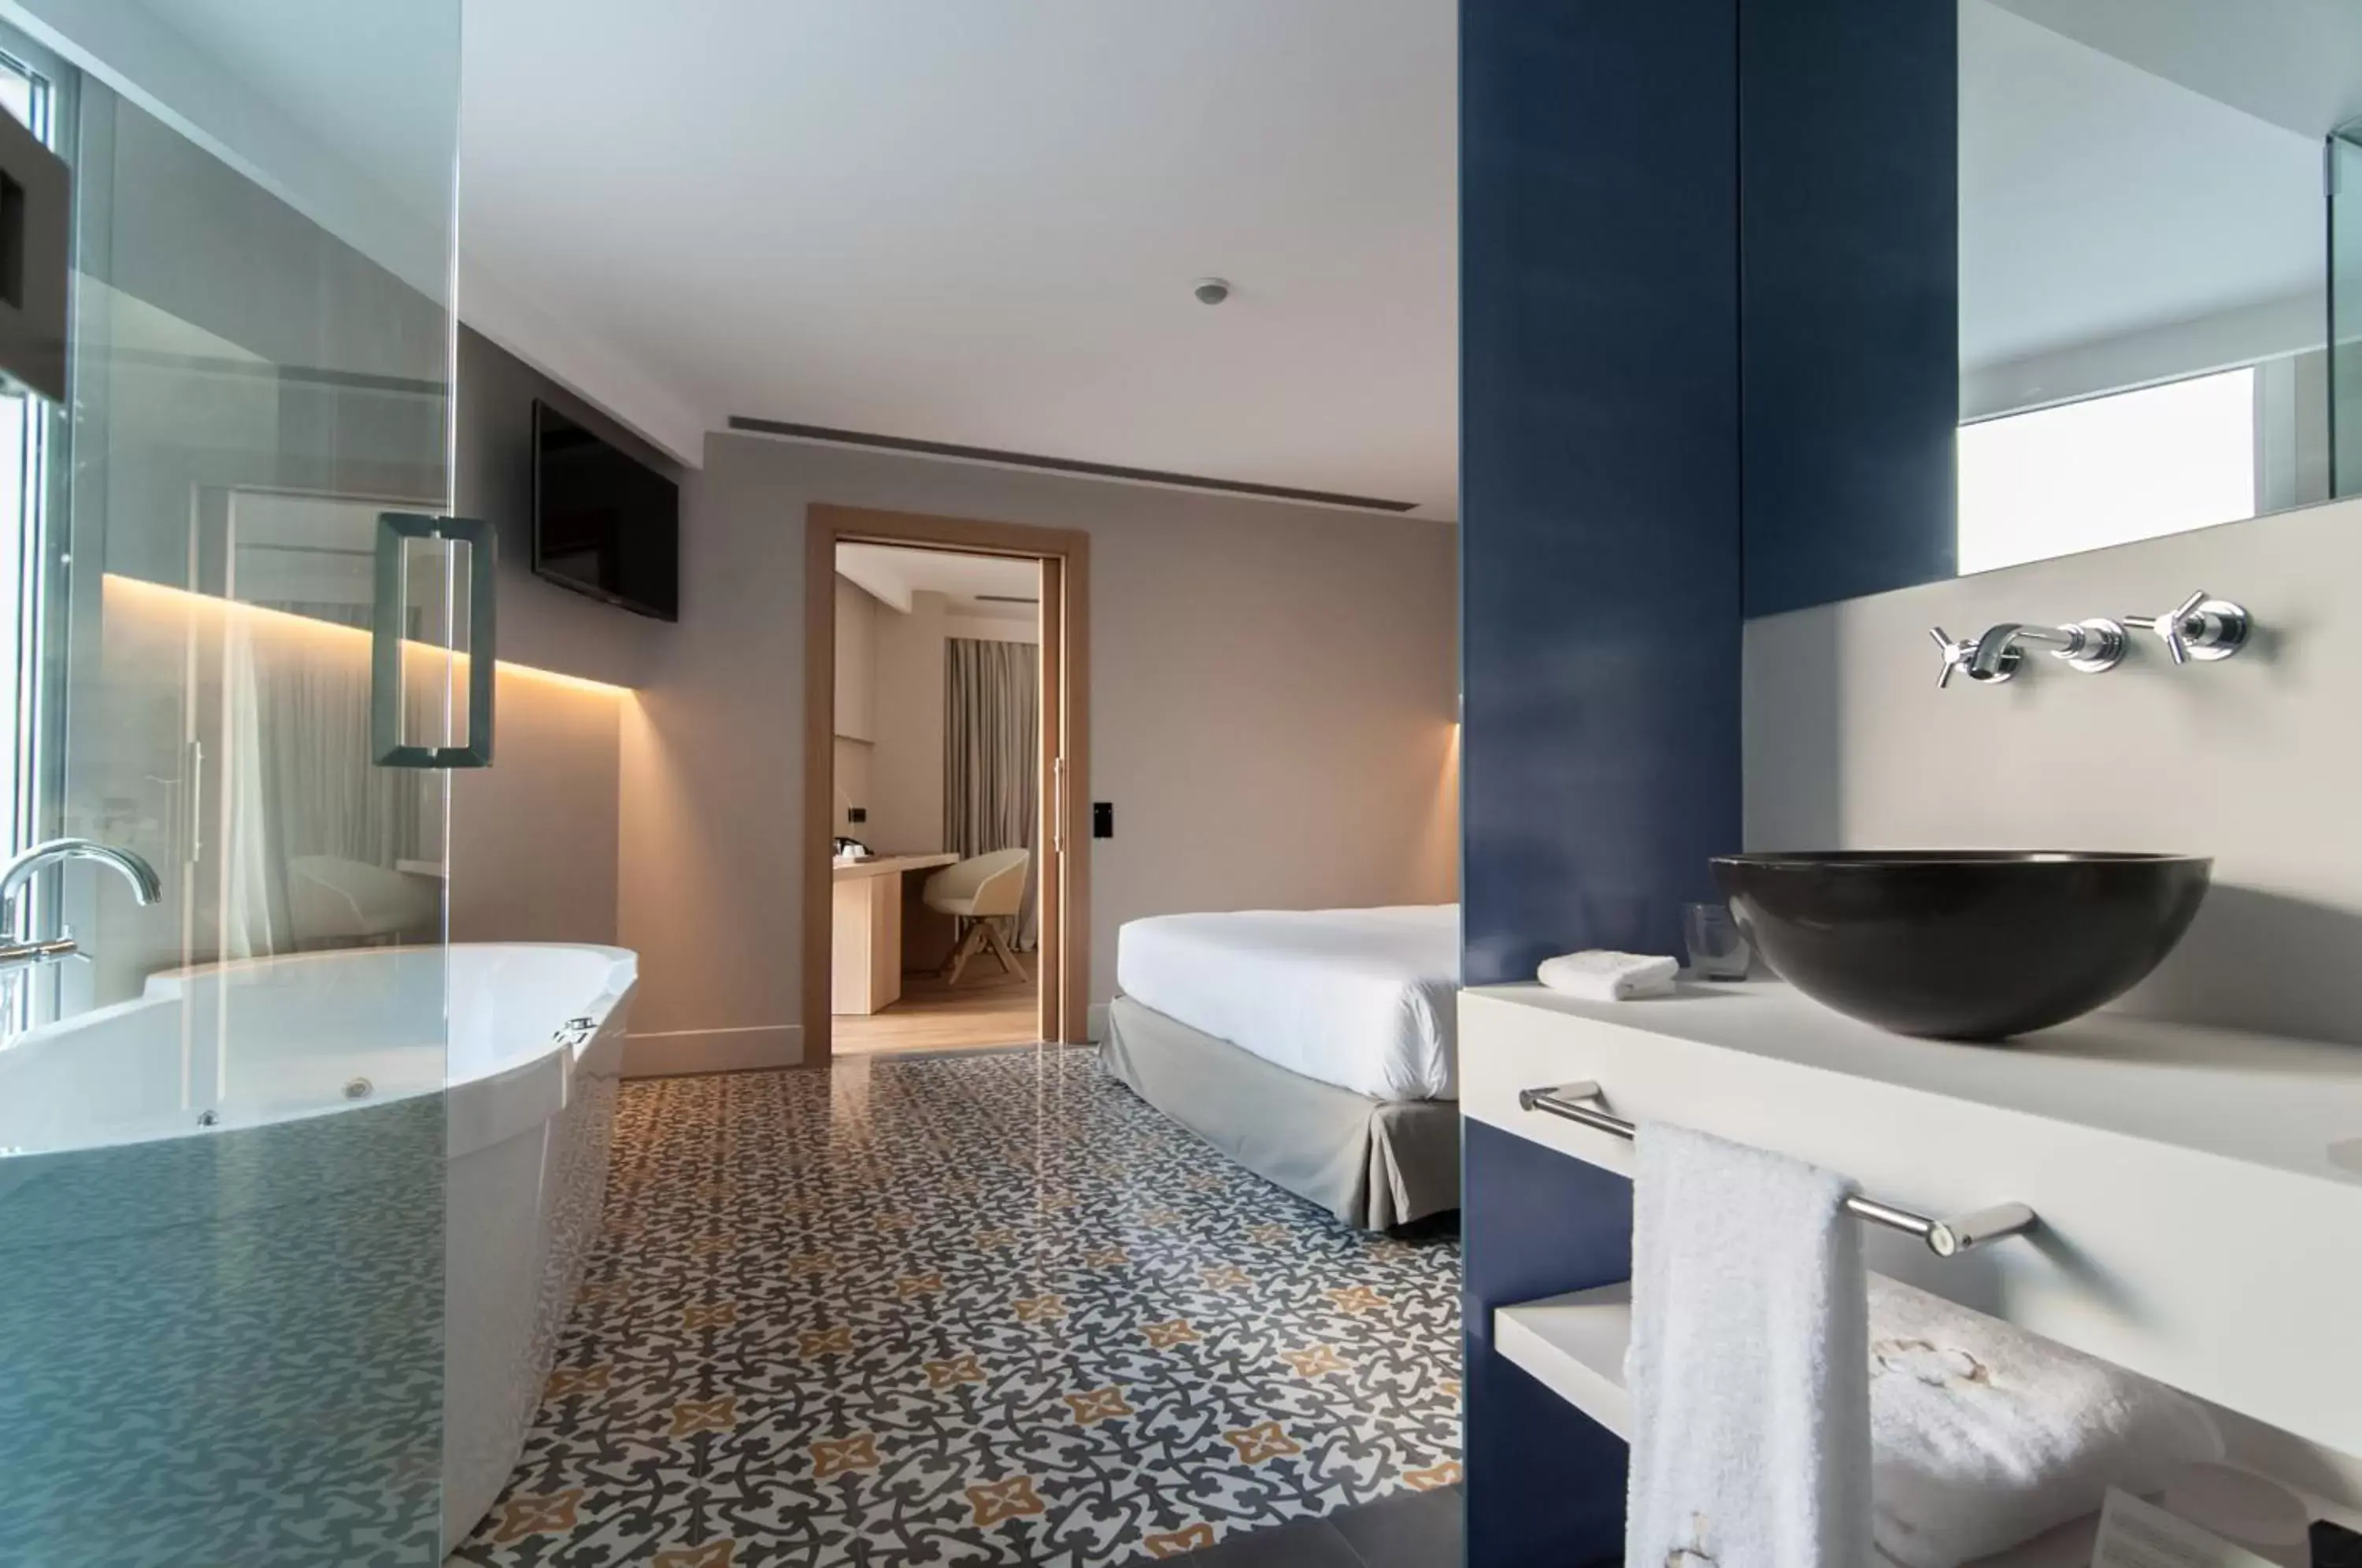 Decorative detail, Bathroom in Hotel Sorli Emocions